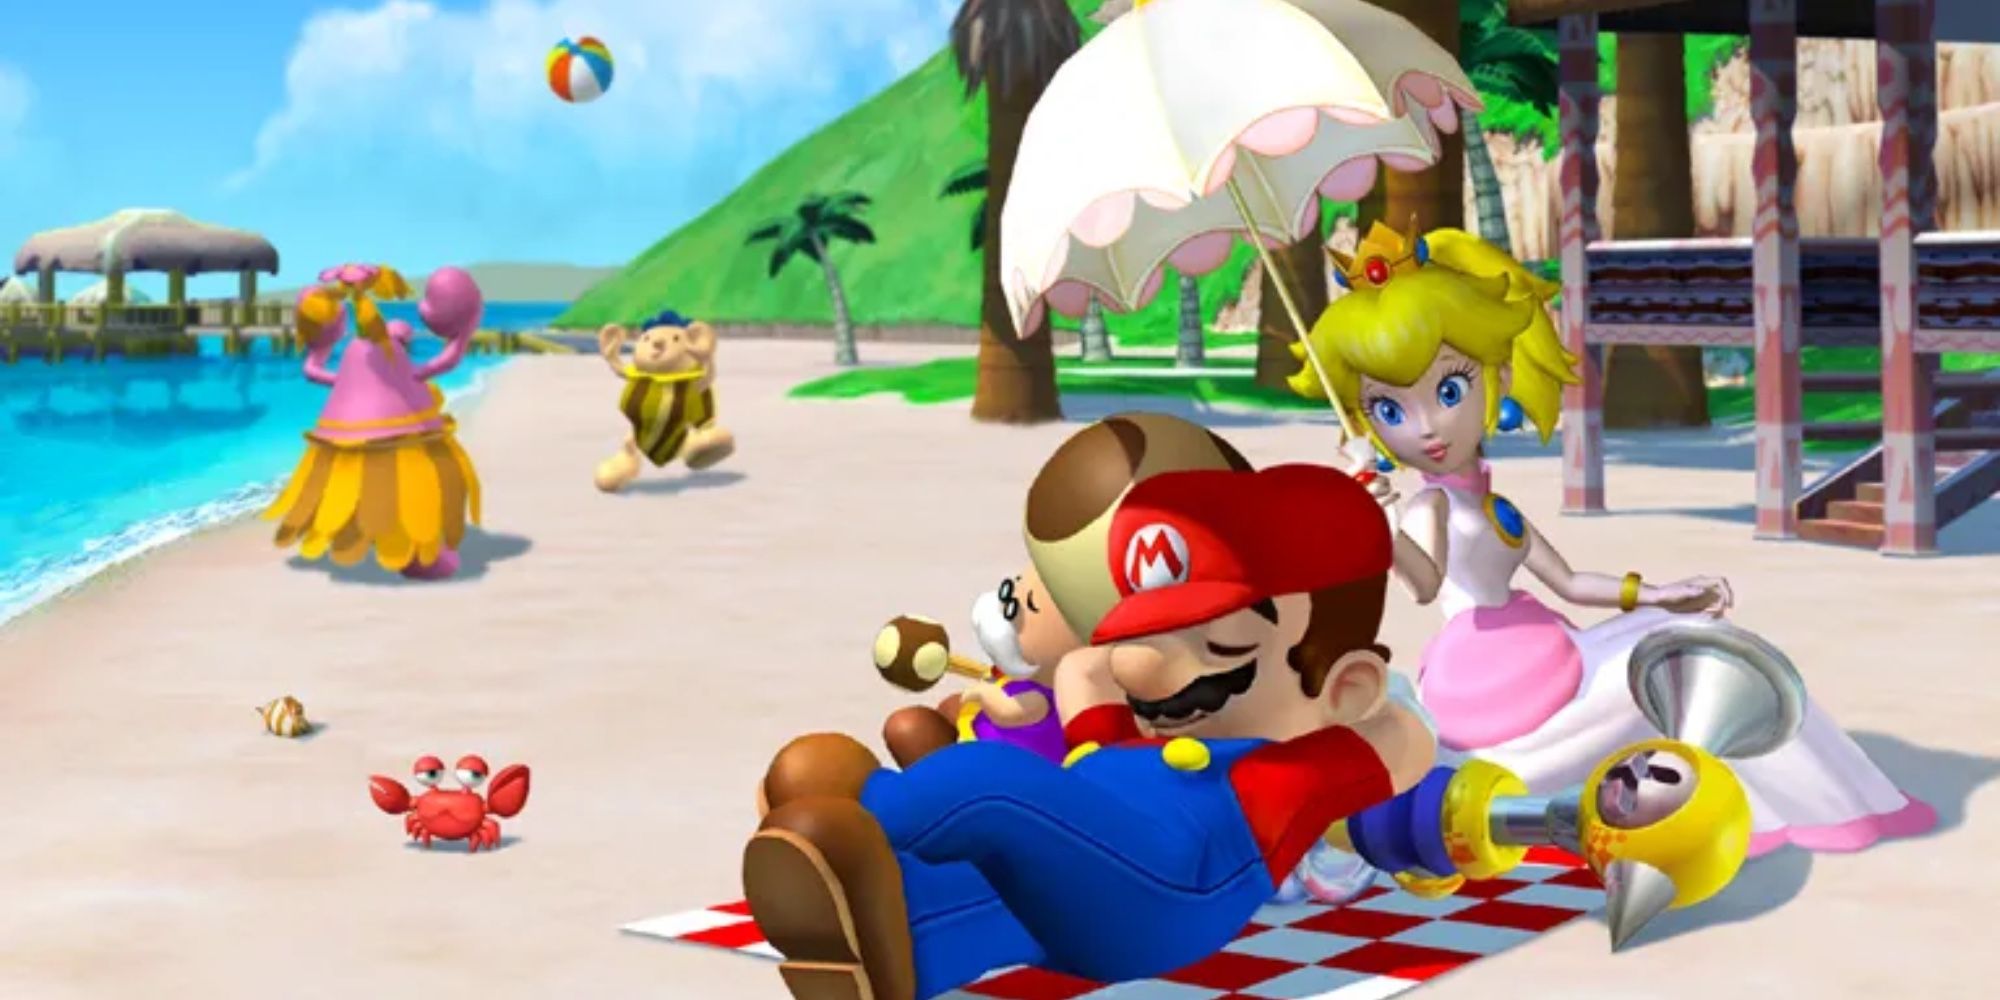 Mario under Peach's parasol in Super Mario Sunshine